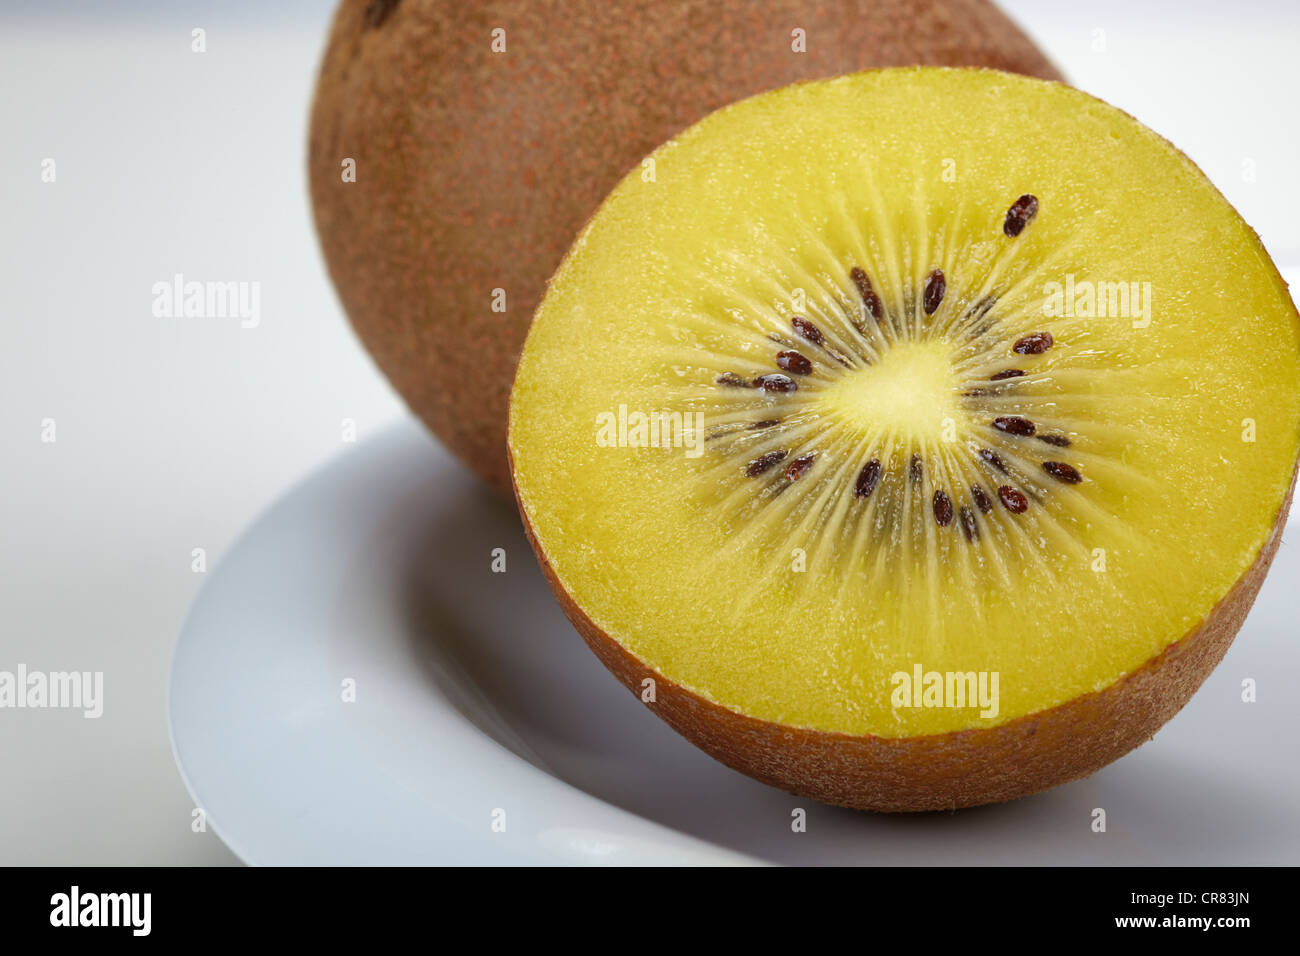 Kiwifruit (Actinidia deliciosa) on a white plate Stock Photo